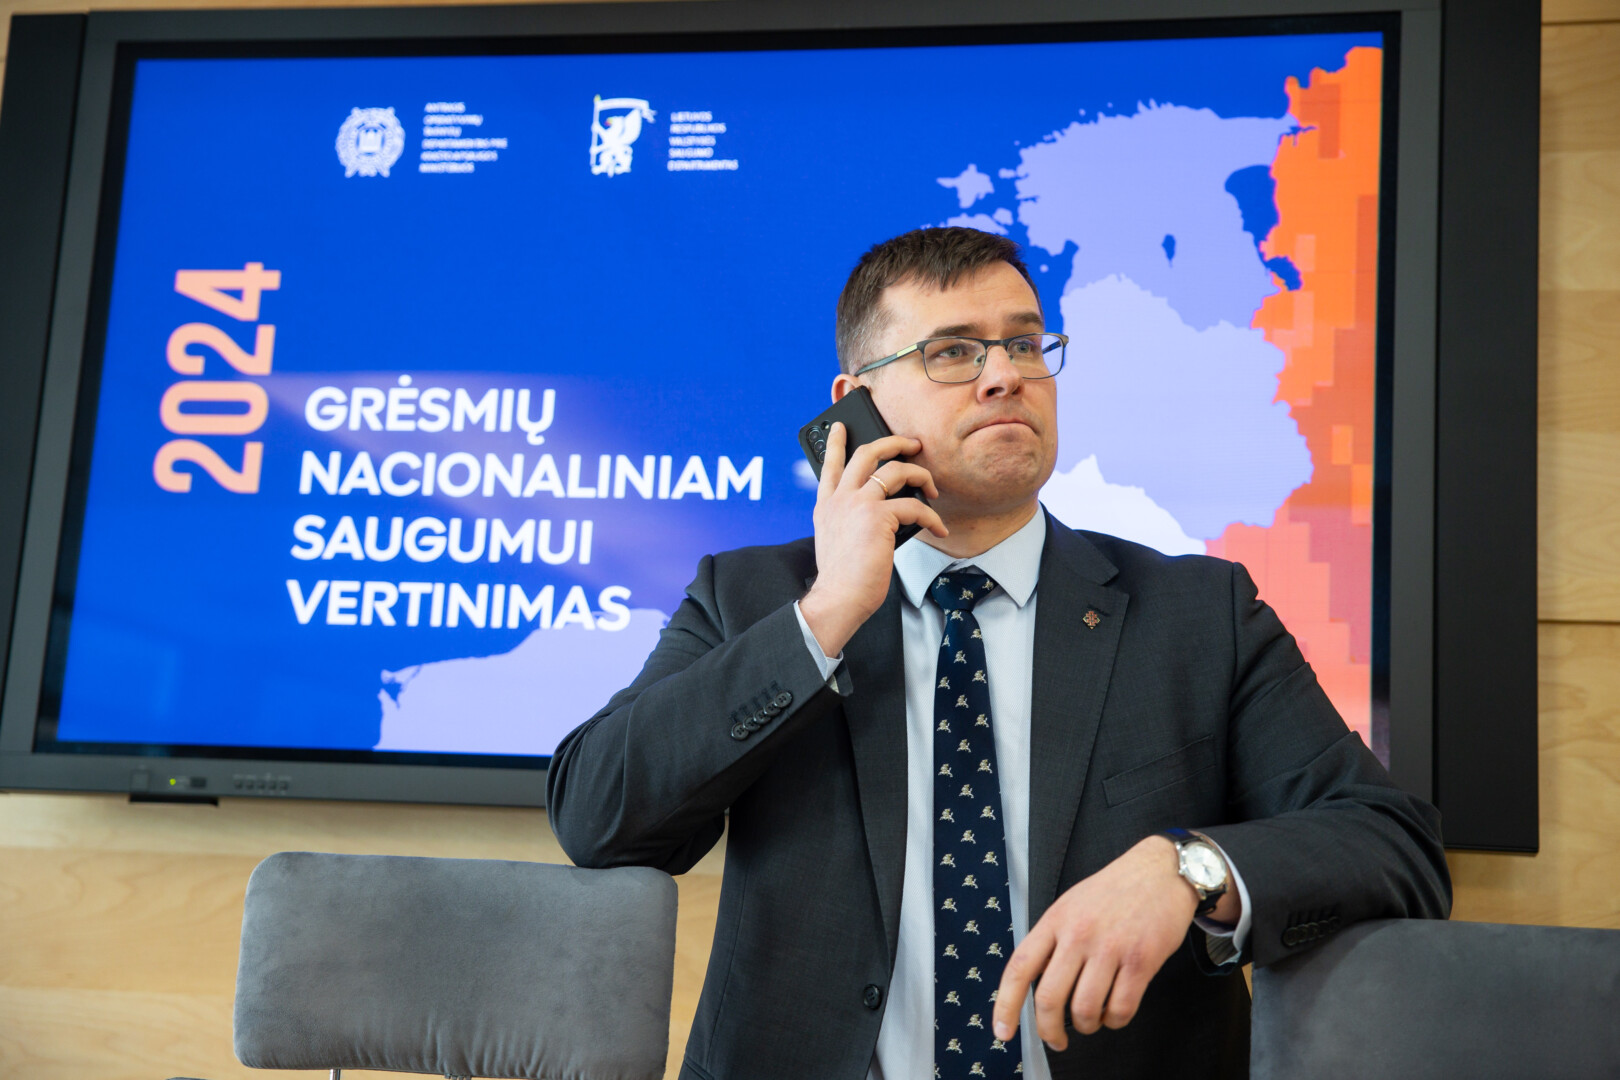 Seimo Nacionalinio saugumo ir gynybos komiteto (NSGK) pirmininkas Laurynas Kasčiūnas tikina esąs pasiruošęs perimti krašto apsaugos ministro Arvydo Anušausko pareigas.